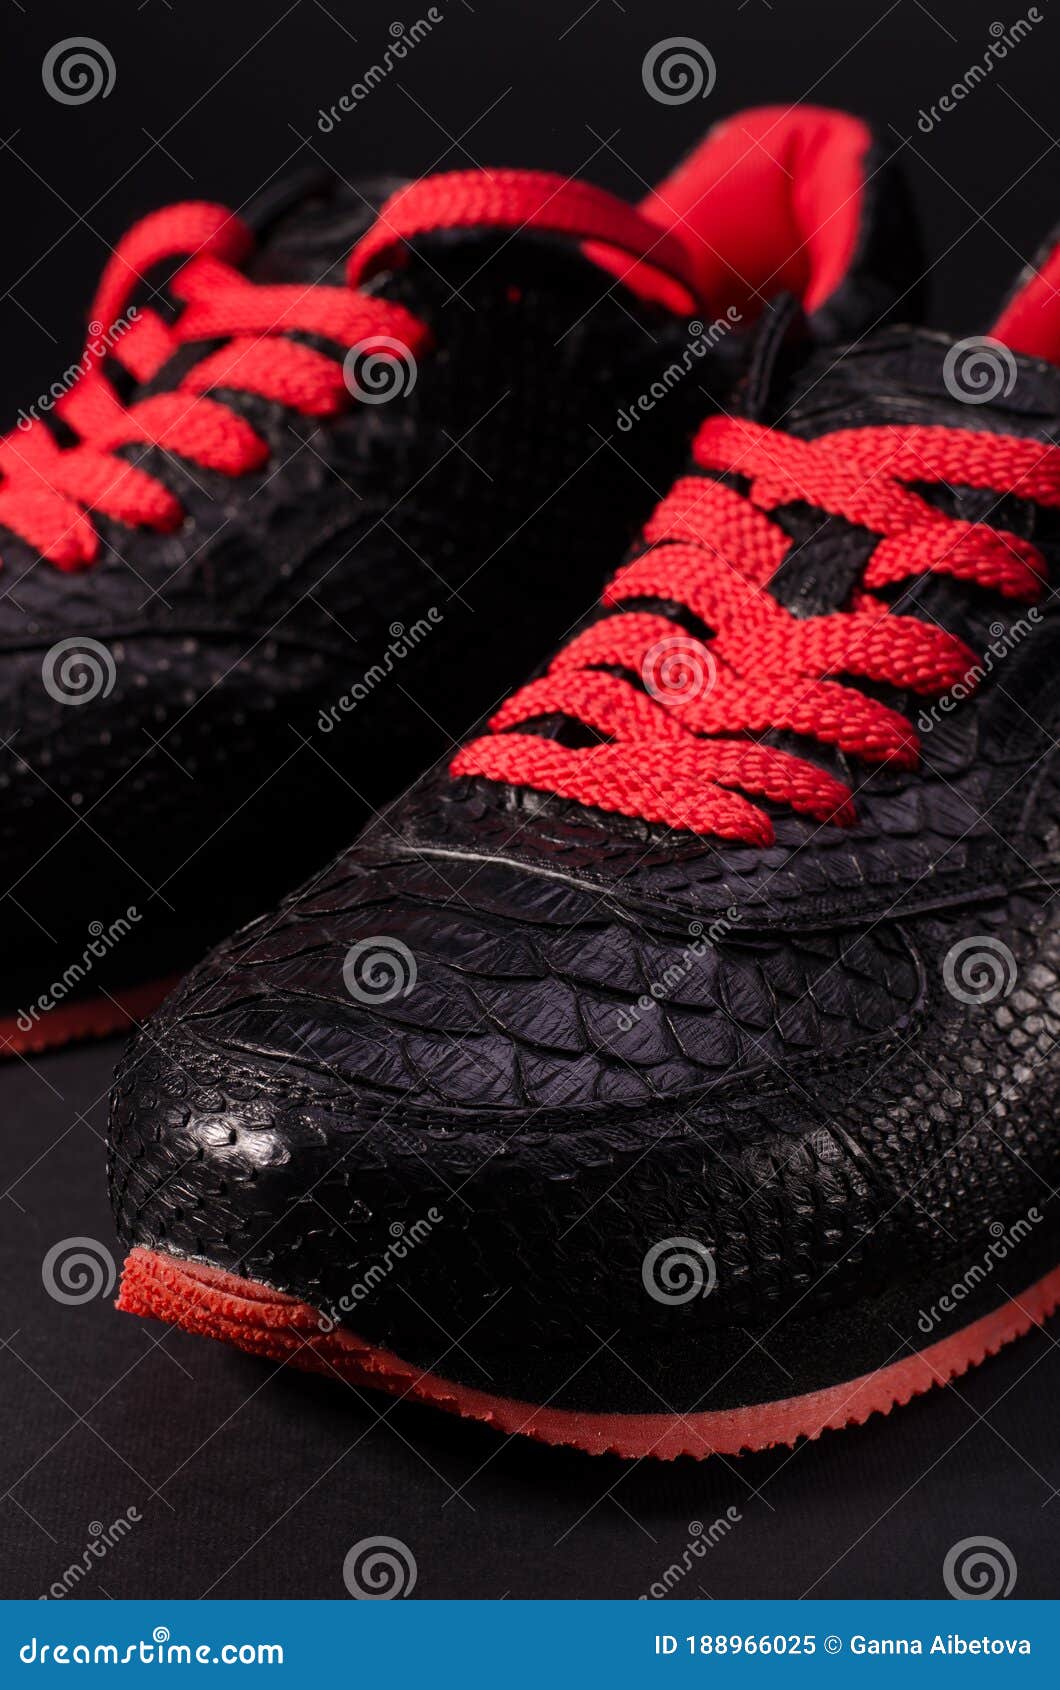 Zapatillas De De Serpiente De Moda. Zapatillas Negras Con Brillos Rojos Contra Fondo Negro Rojo Imagen de archivo Imagen arte, manera: 188966025